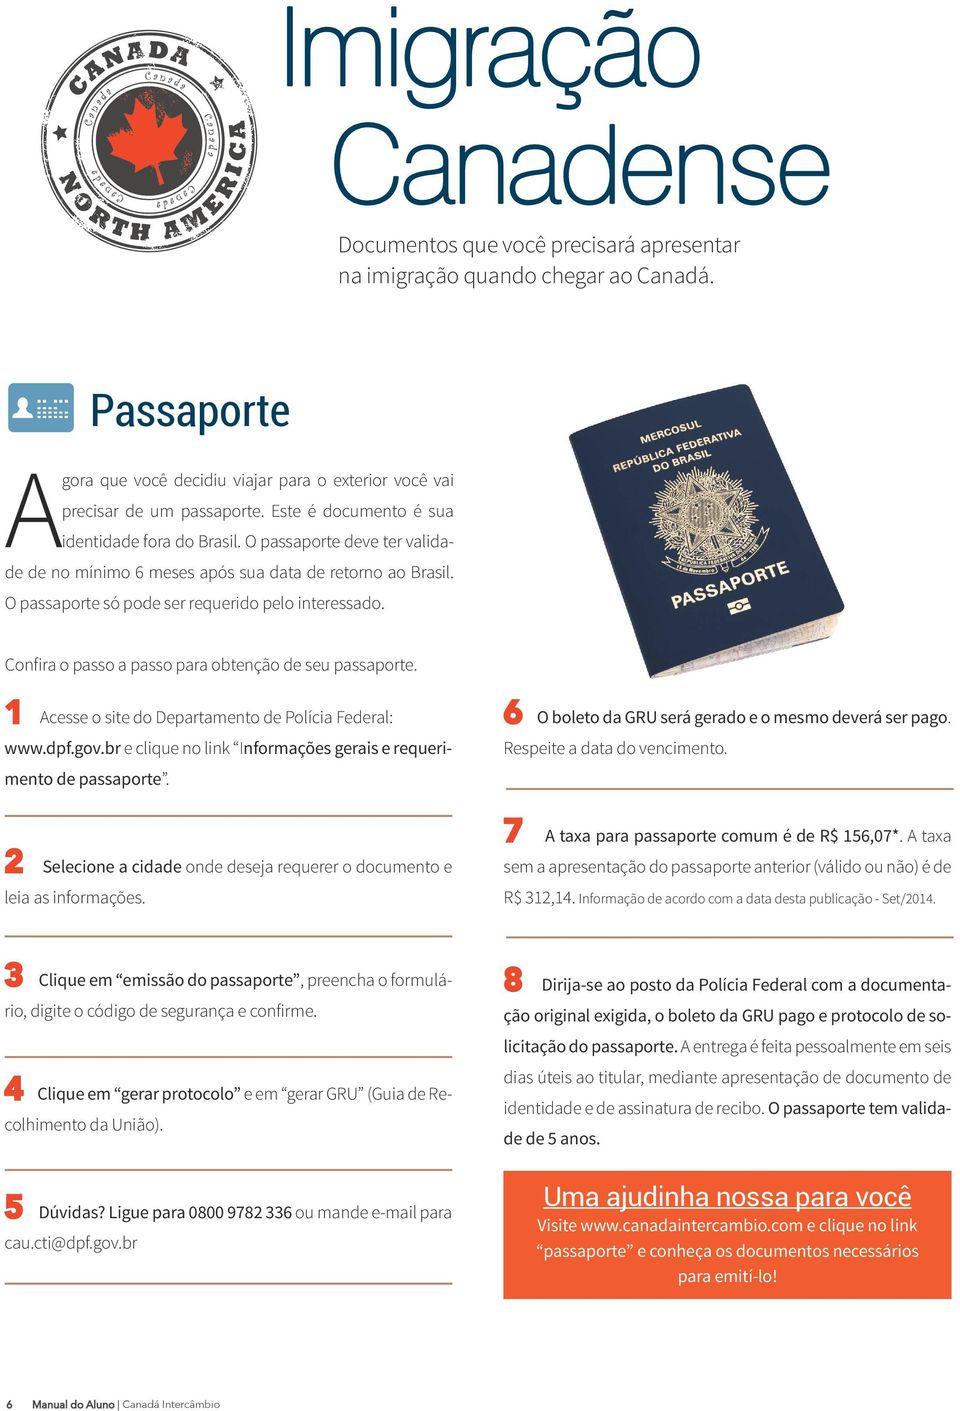 Confira o passo a passo para obtenção de seu passaporte. 1 Acesse o site do Departamento de Polícia Federal: www.dpf.gov.br e clique no link Informações gerais e requerimento de passaporte.